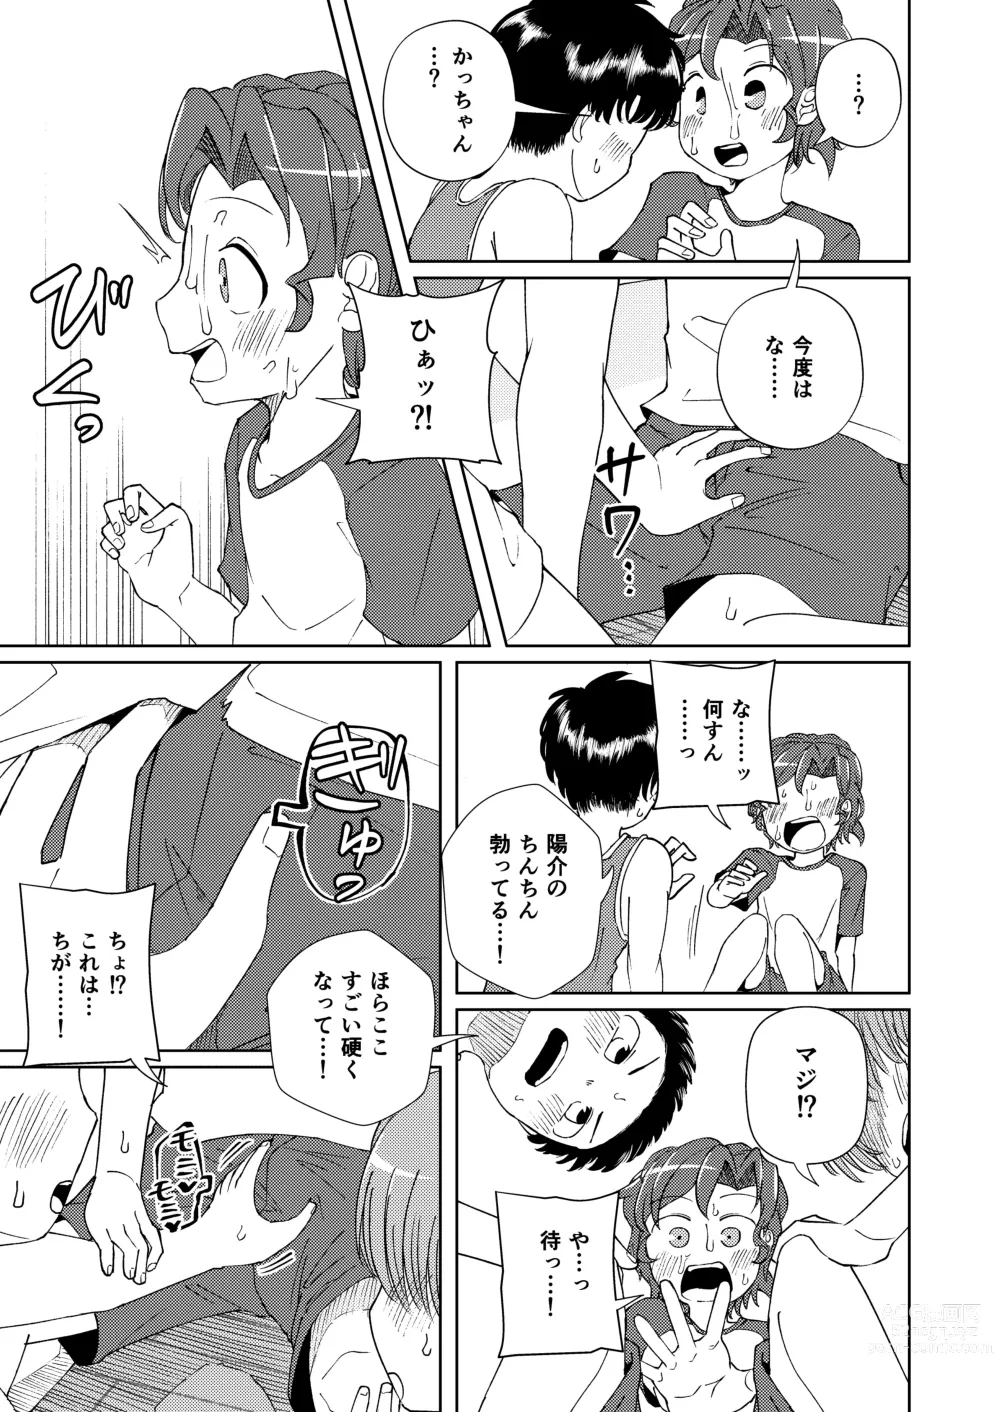 Page 21 of doujinshi Shoujiki Iu to,